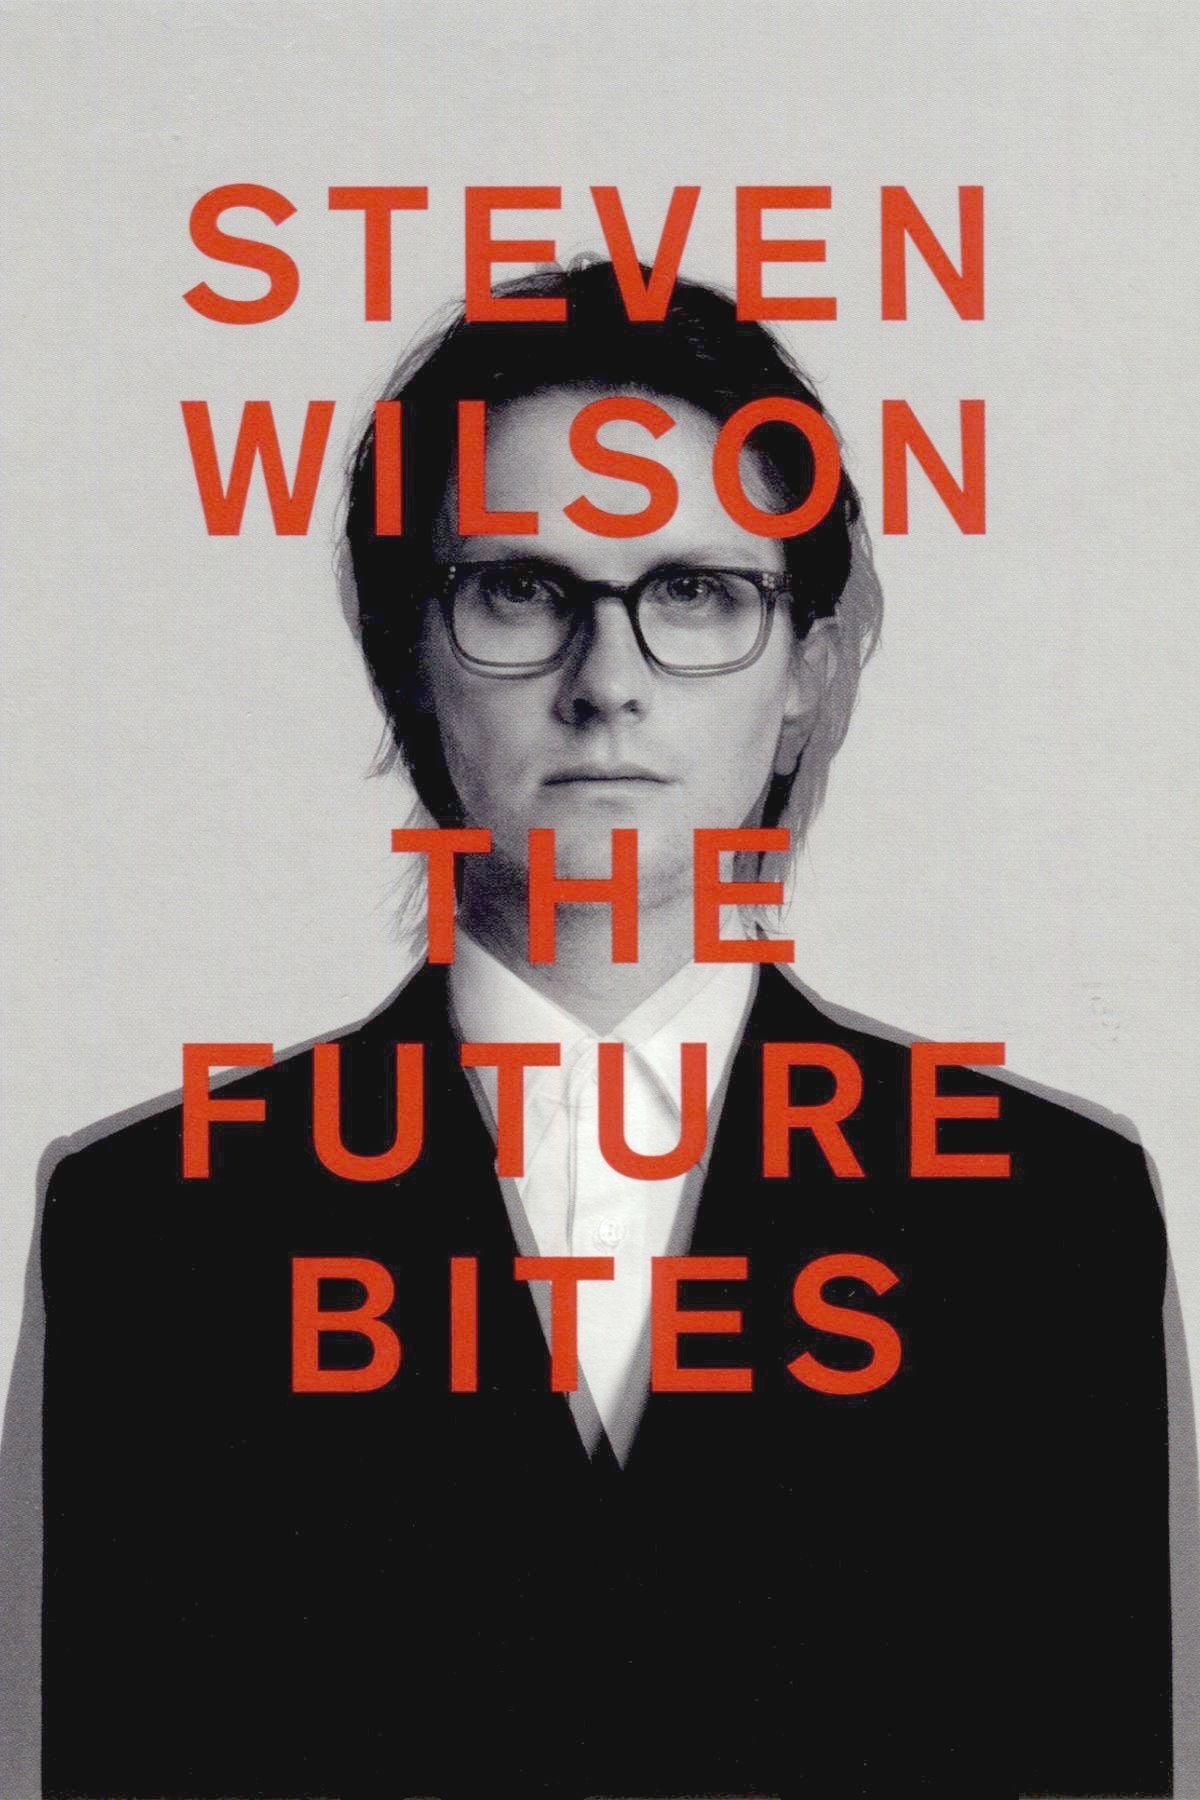 Steven Wilson: THE FUTURE BITES